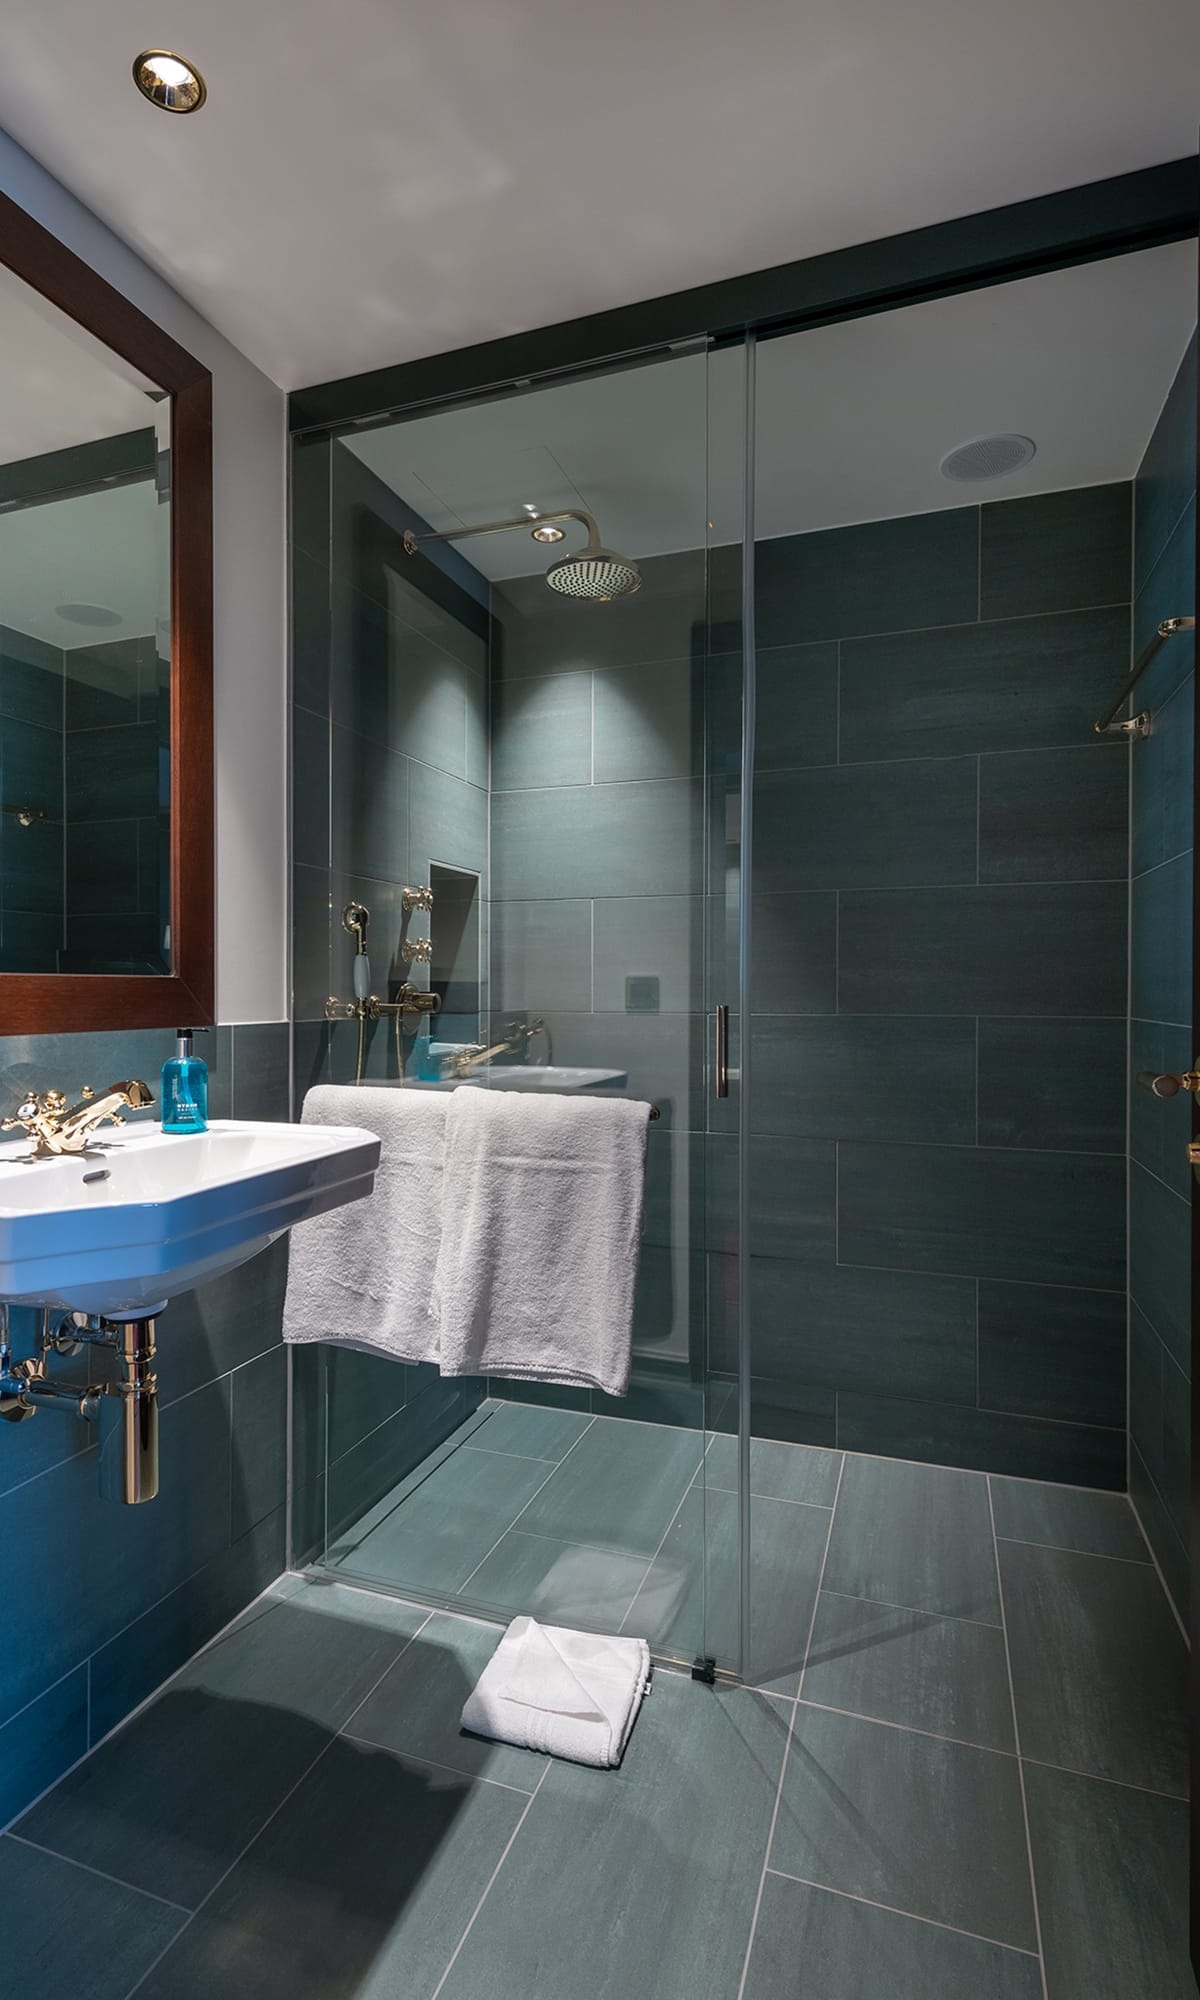 Dusche in einem Gästezimmer des Hotel Bad Horn mit grauen Fliesen und Glastüre und weisses Lavabo <br/><br/>